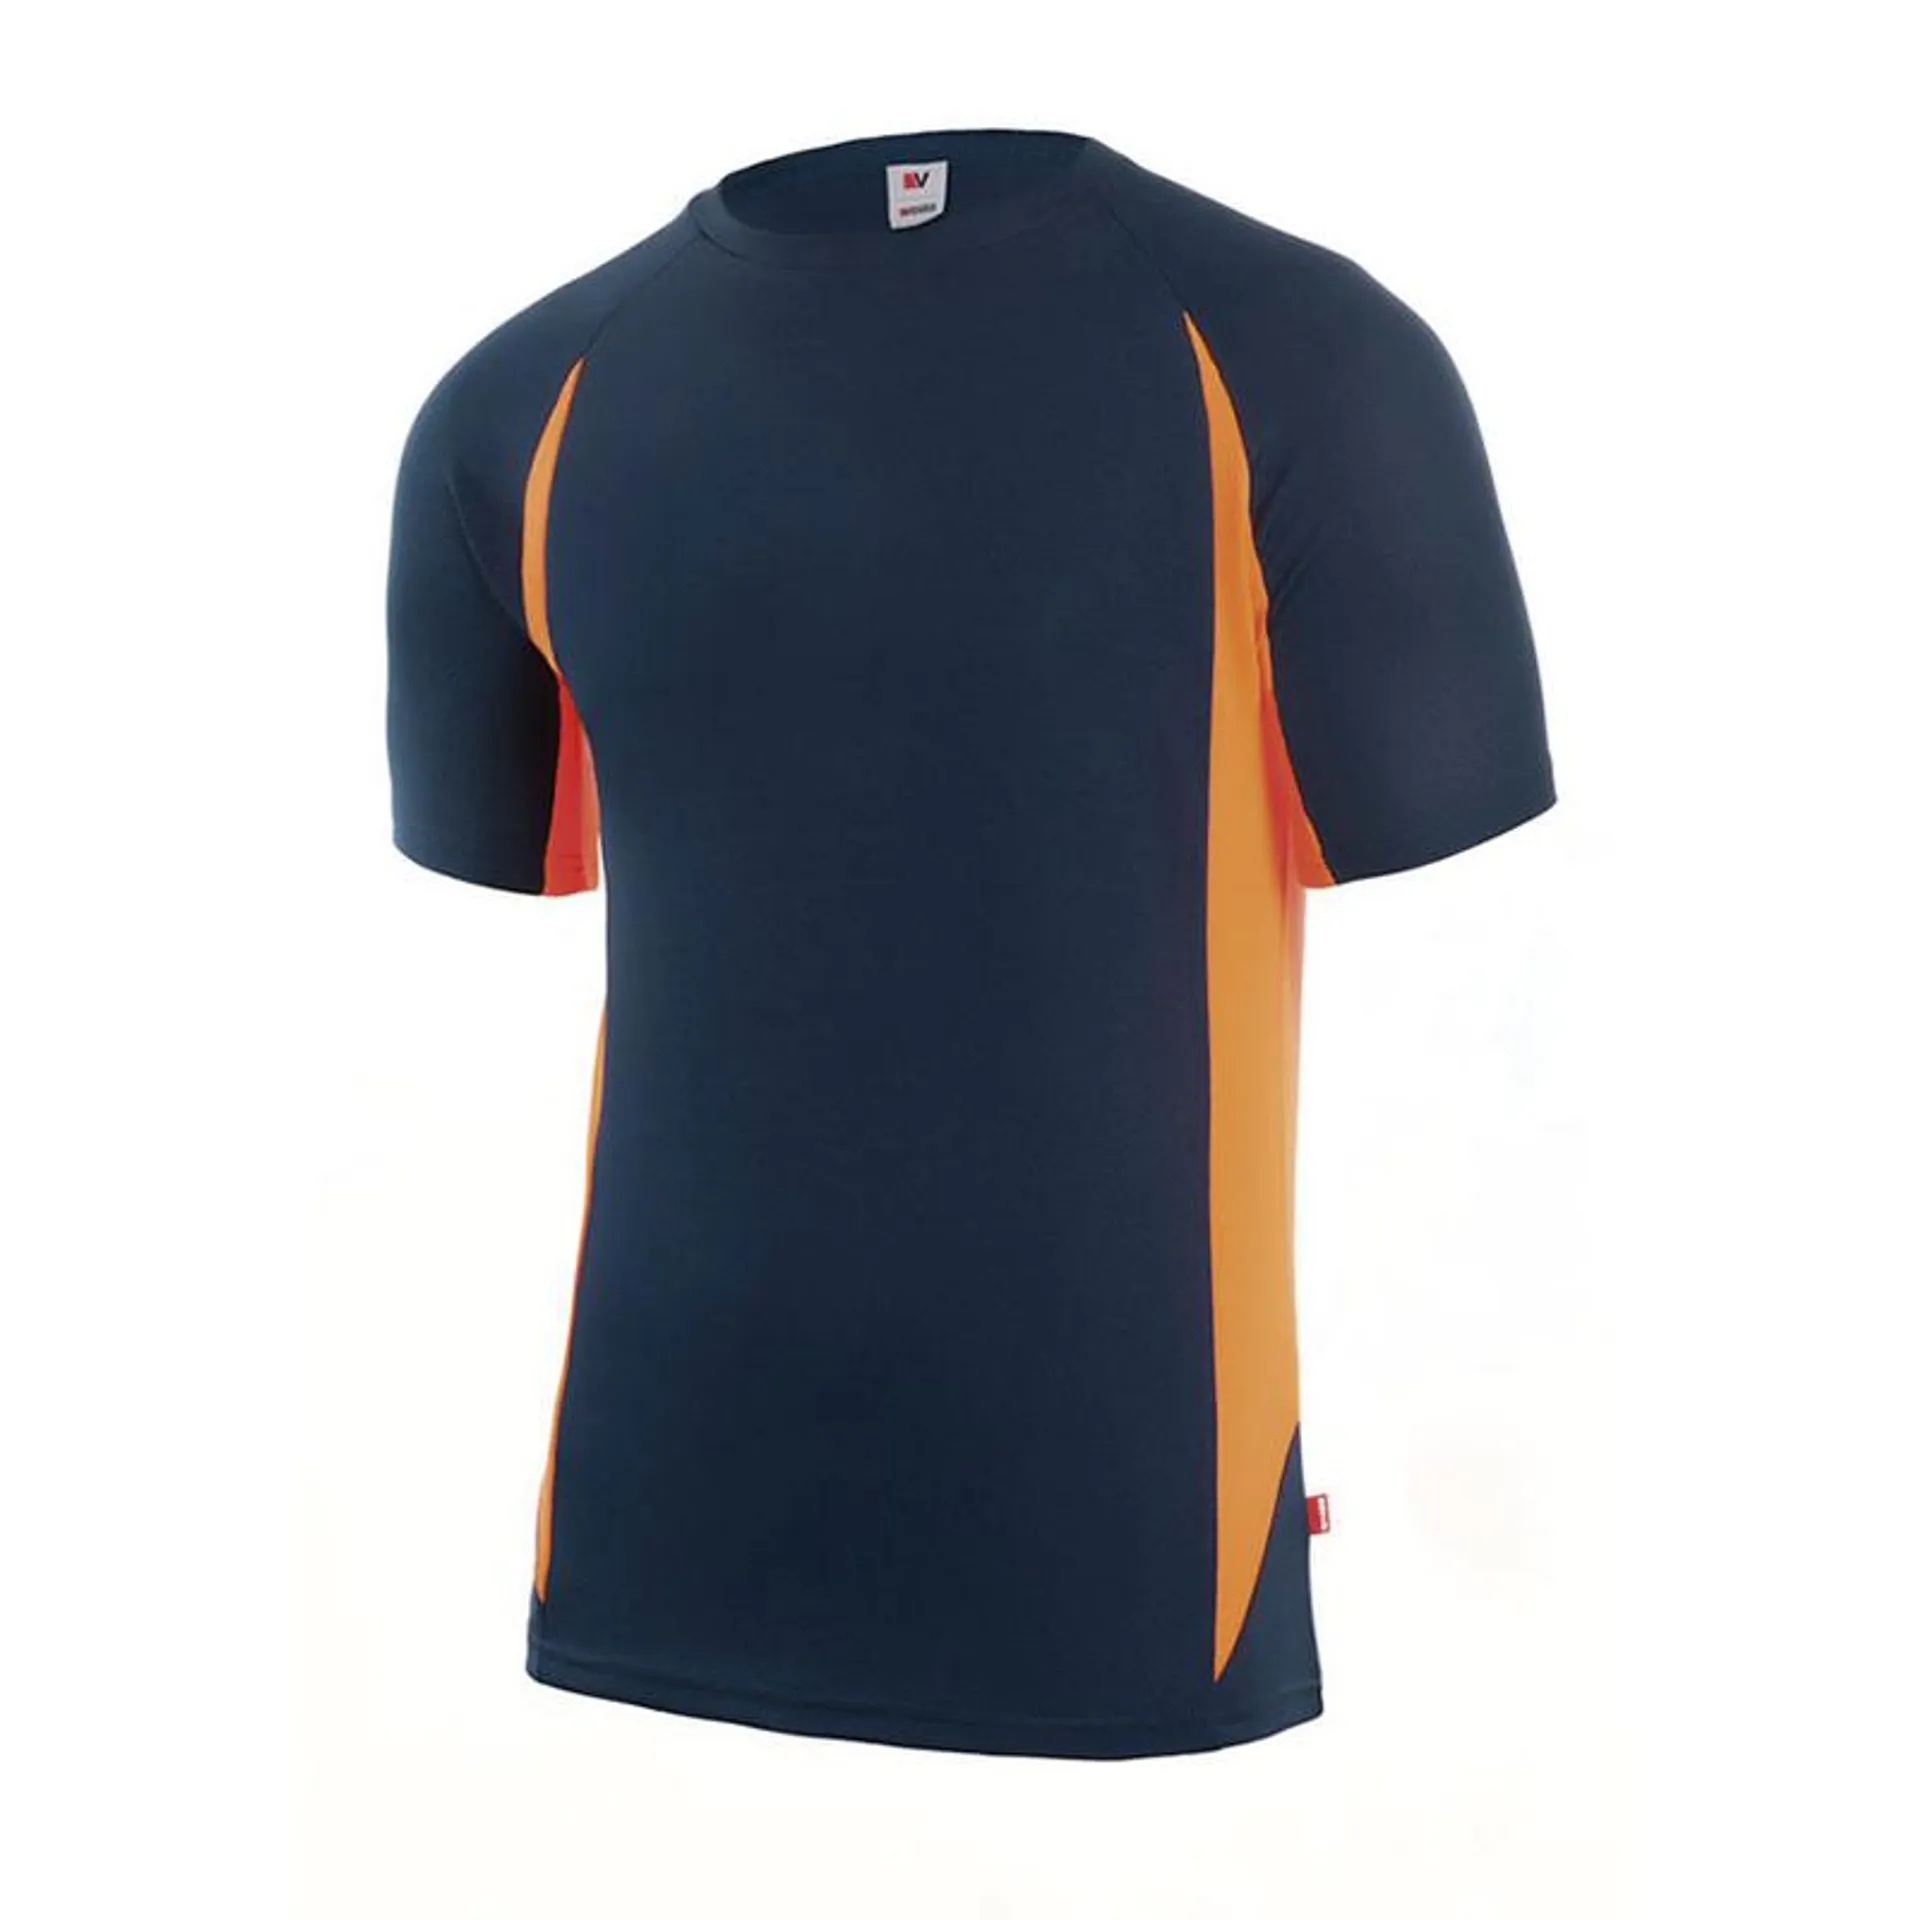 Camiseta técnica RATIO RC-1 azul marino/naranja